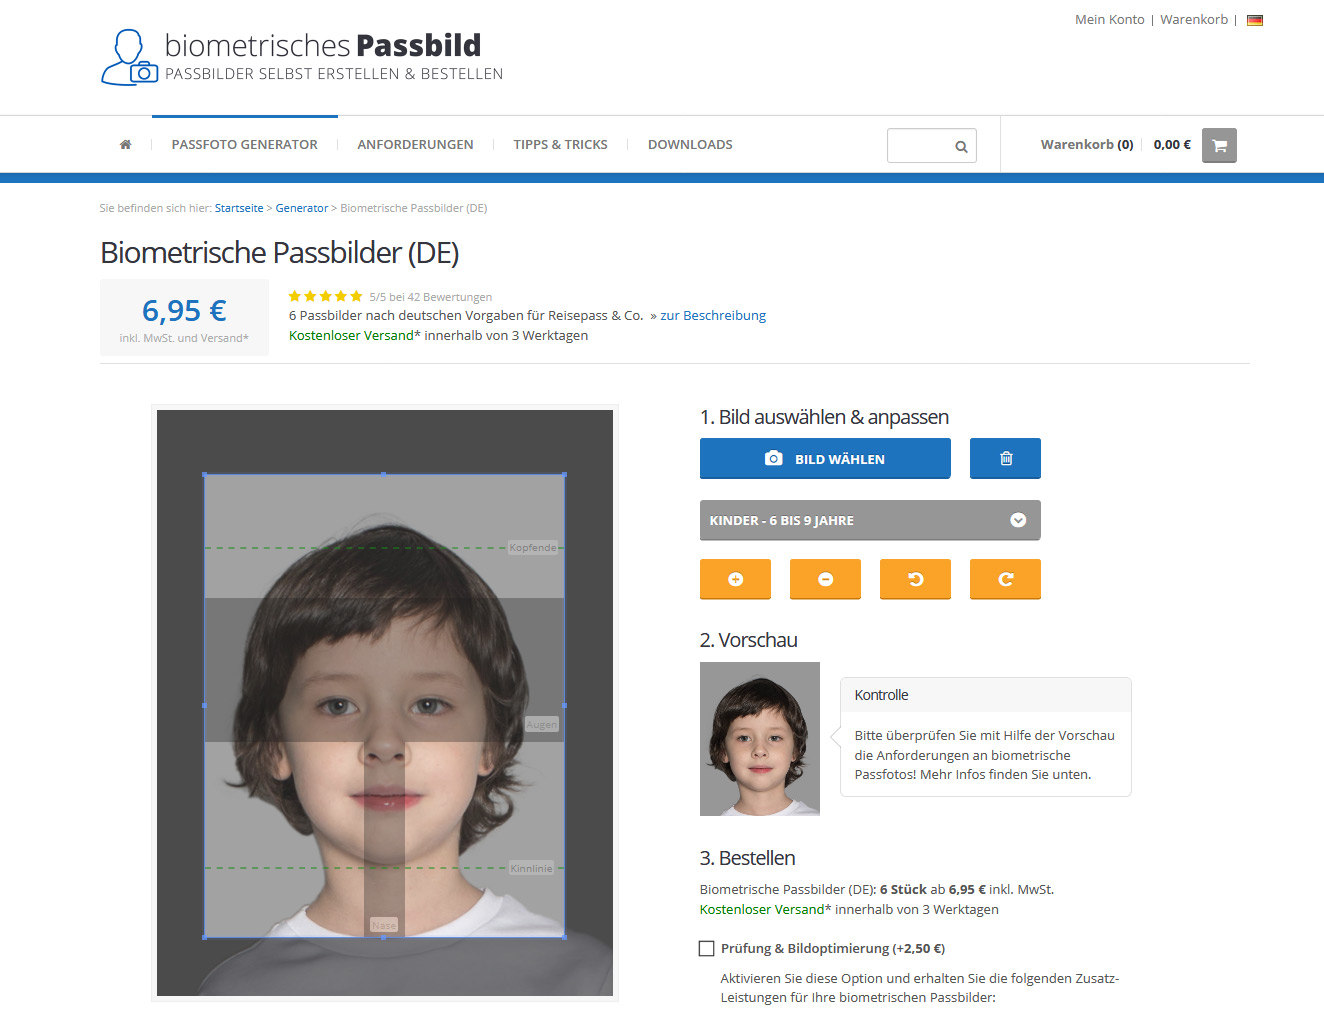 Passfotogenerator zur Erstellung biometrischer Passbilder